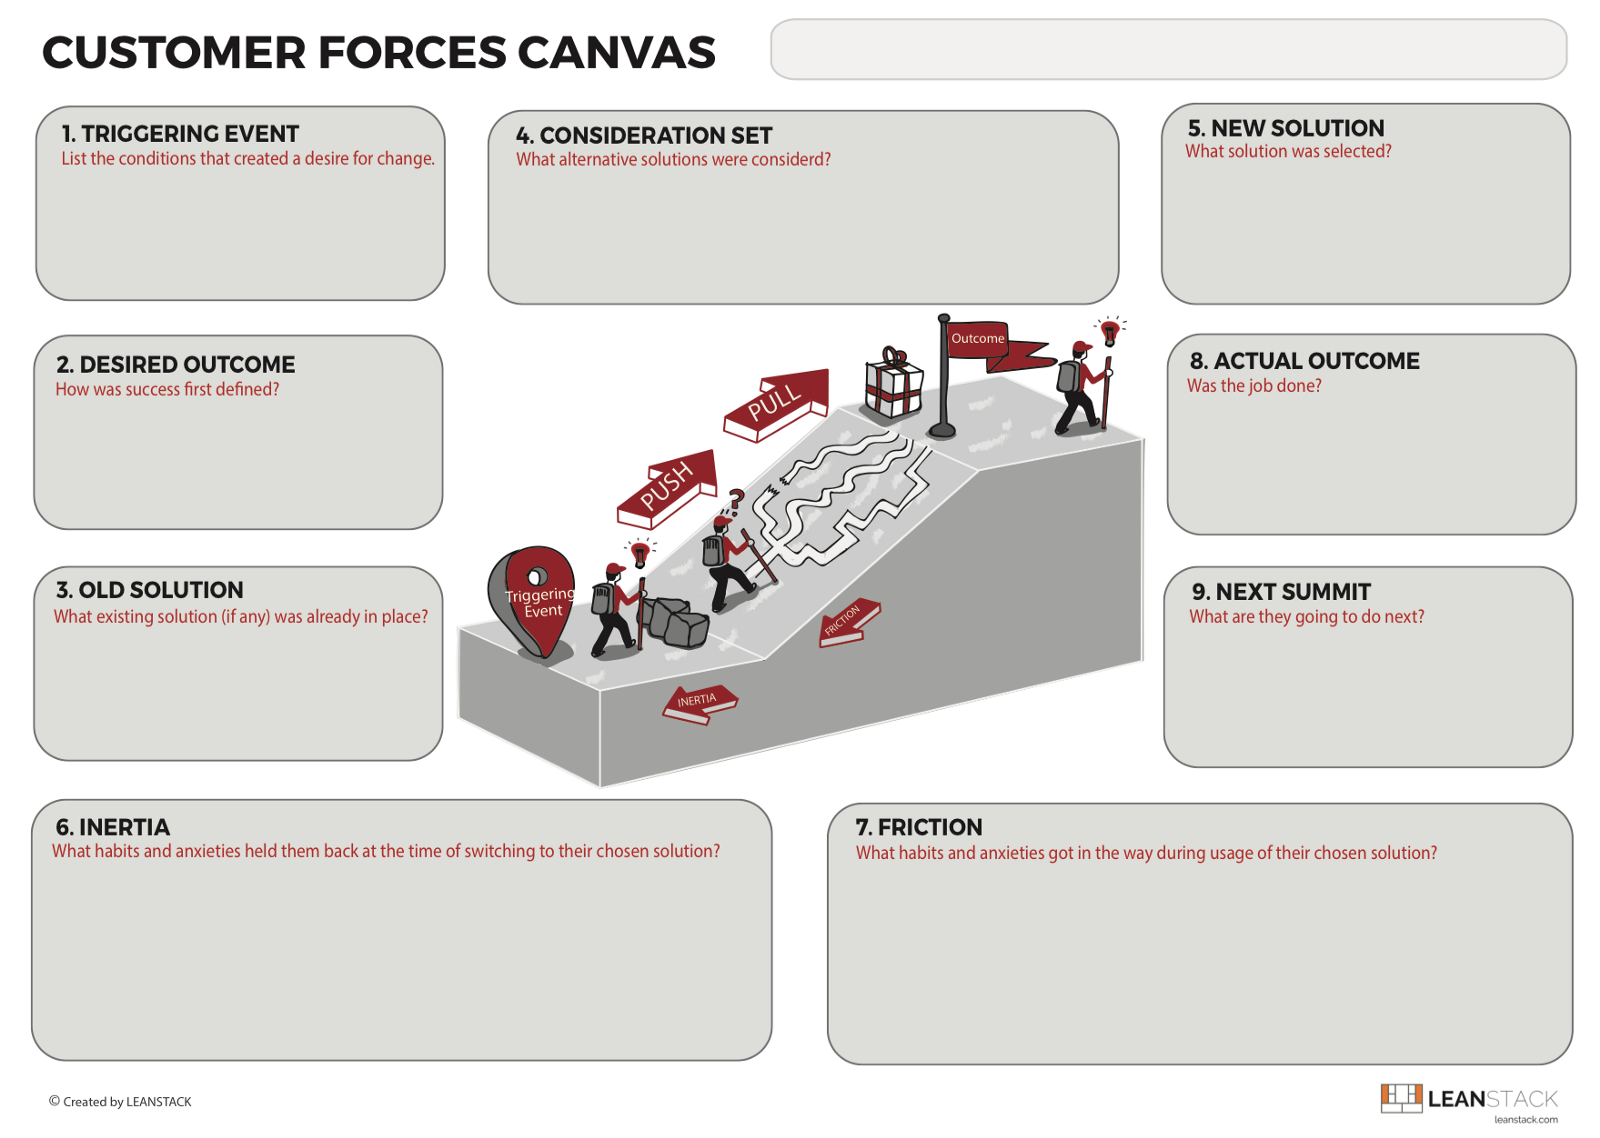 LeanStack Customer Forces Canvas v2